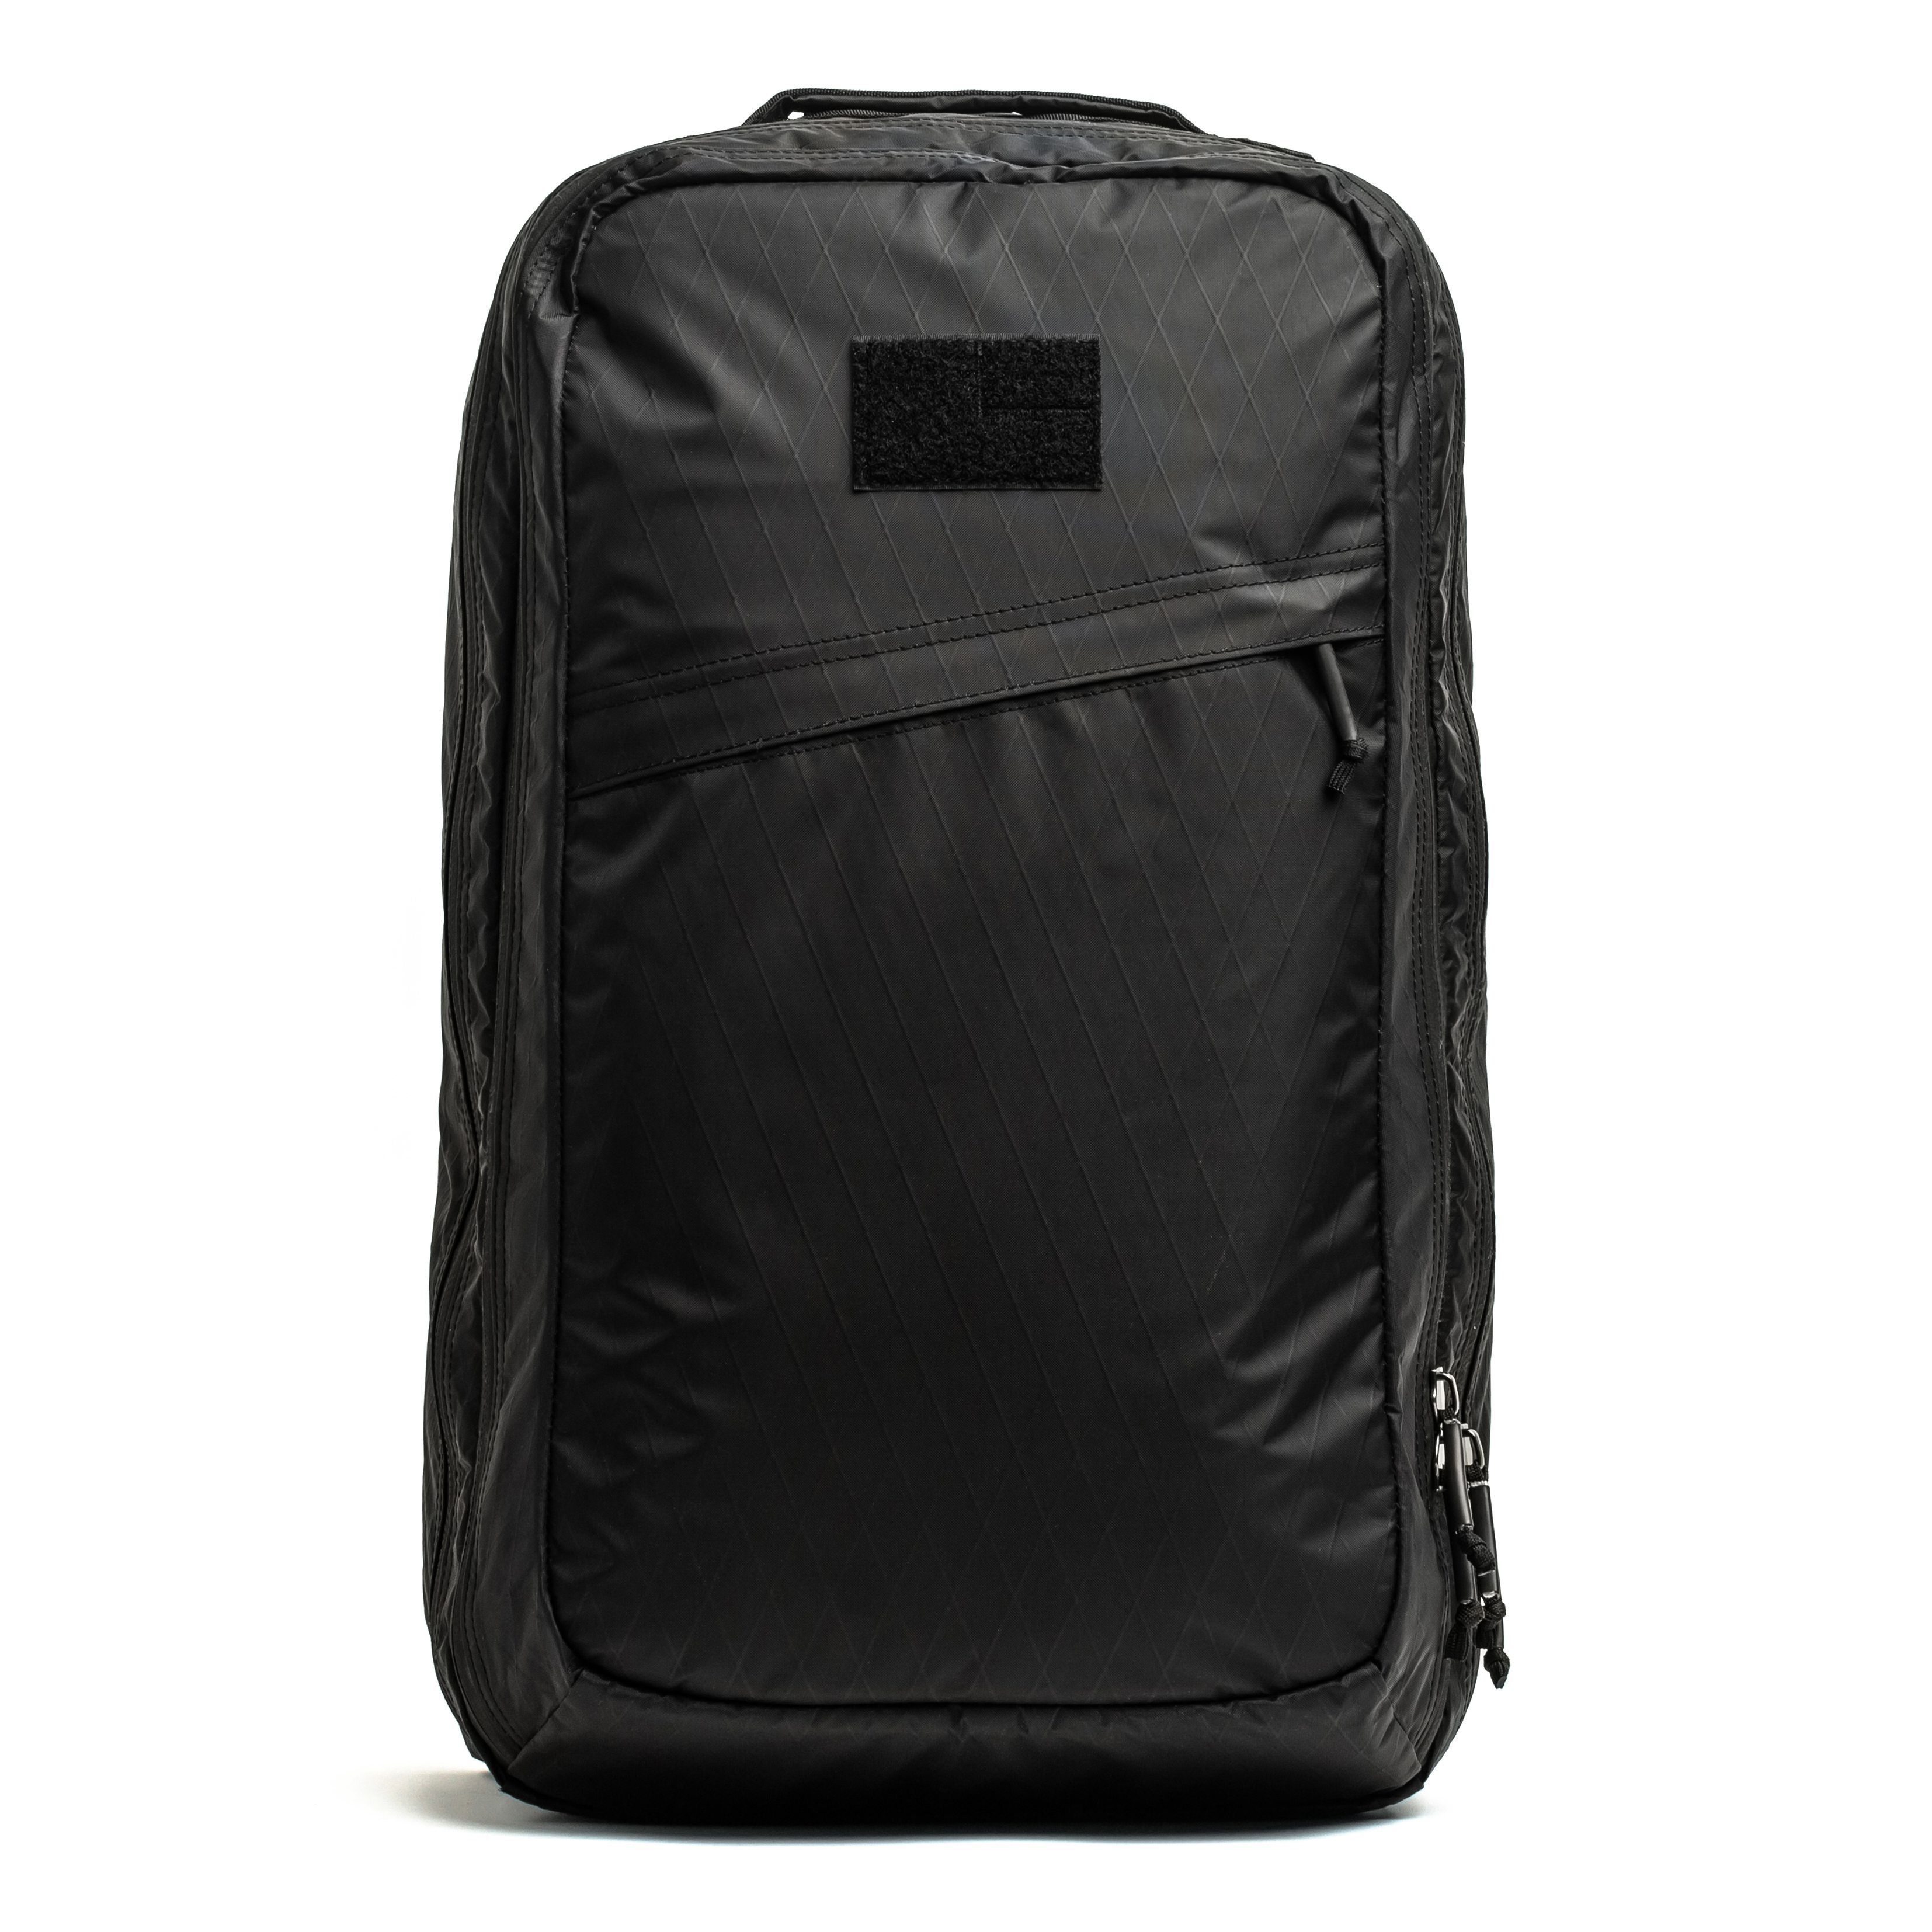 GORUCK GR2 XPAC Backpack - 40L - Black / Green | Backpacks